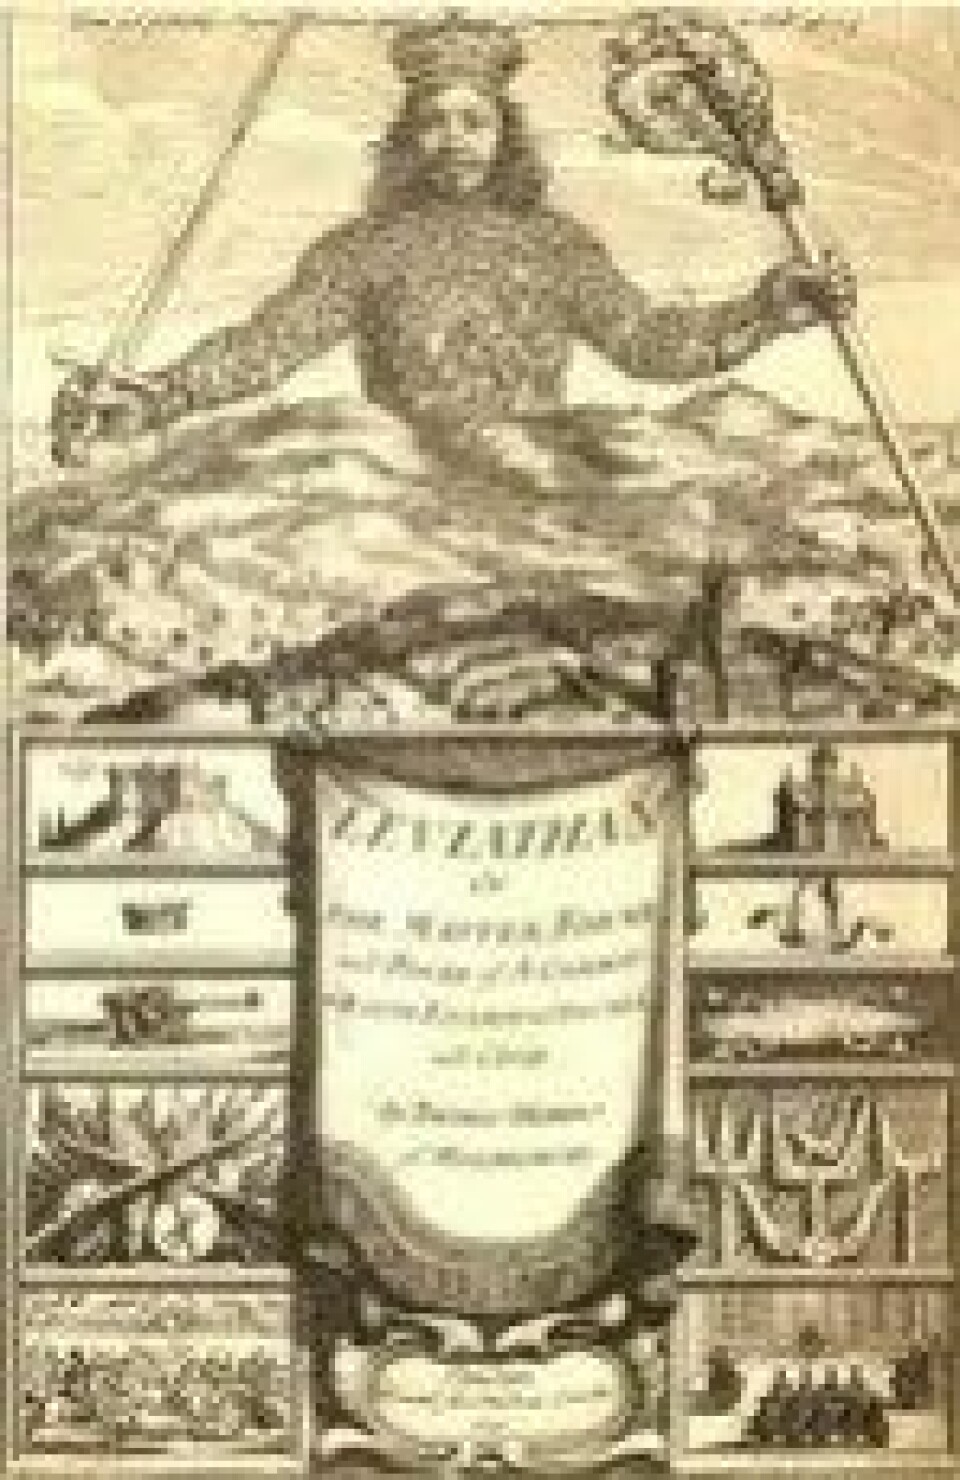 Tittelbladet til Hobbes’ bok Leviathan (1651). (Kilde: Wikimedia commons)